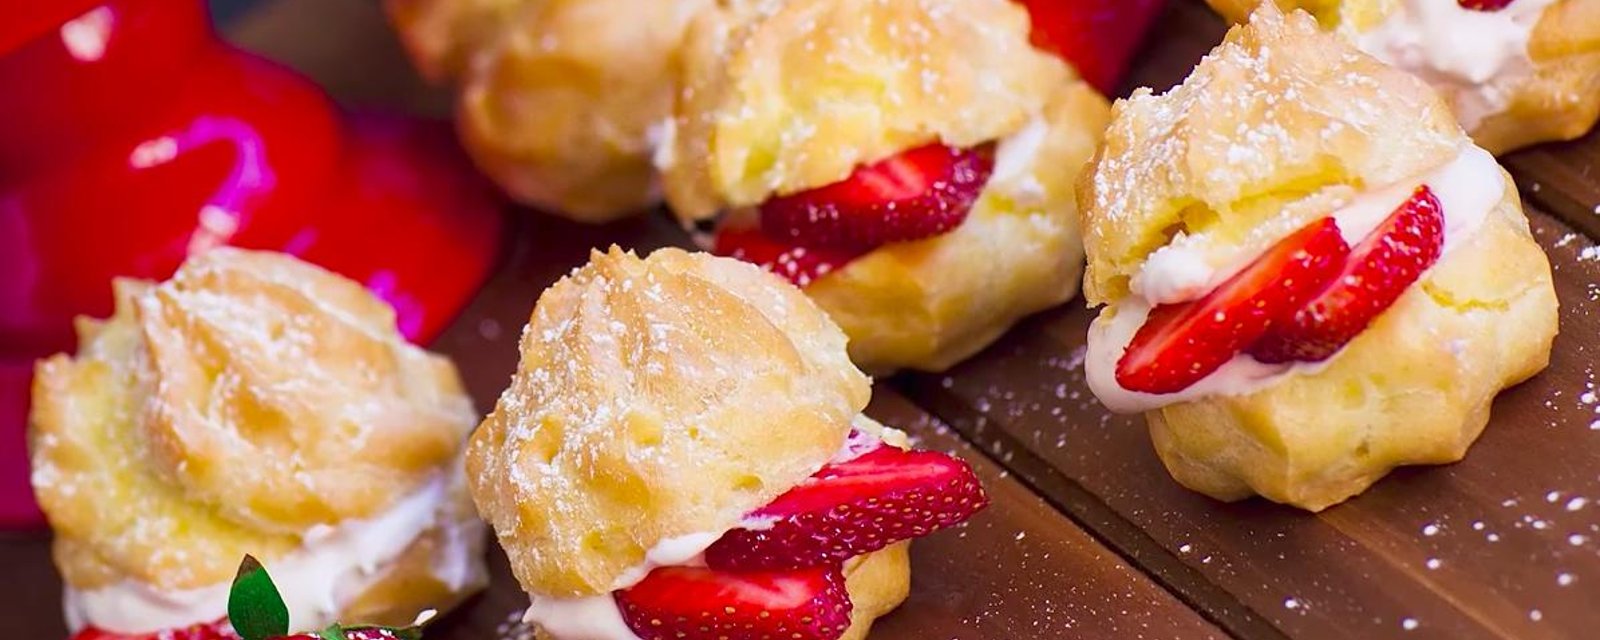 Profiteroles “shortcake” aux fraises... Du bonheur à l'état brut!